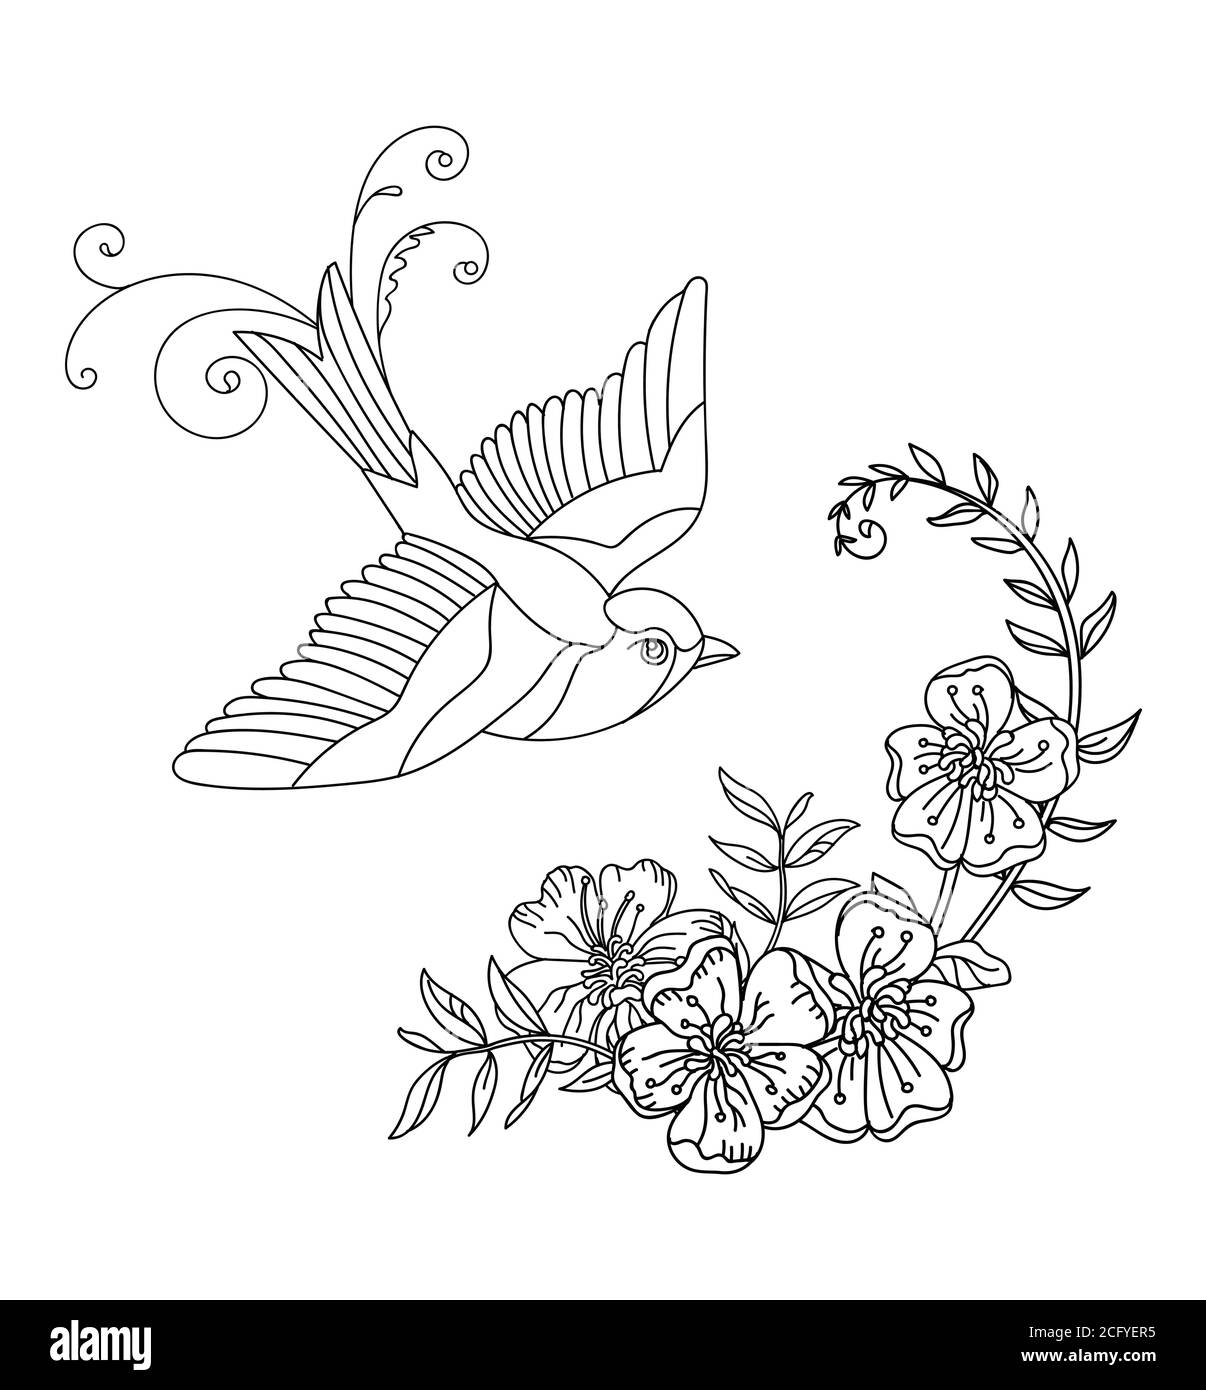 Linea vettoriale uccello e fiori decorativi. Illustrazione del contorno nero isolata su bianco. Modello monocromatico disegnato a mano vettoriale per colorare il libro, noi Illustrazione Vettoriale